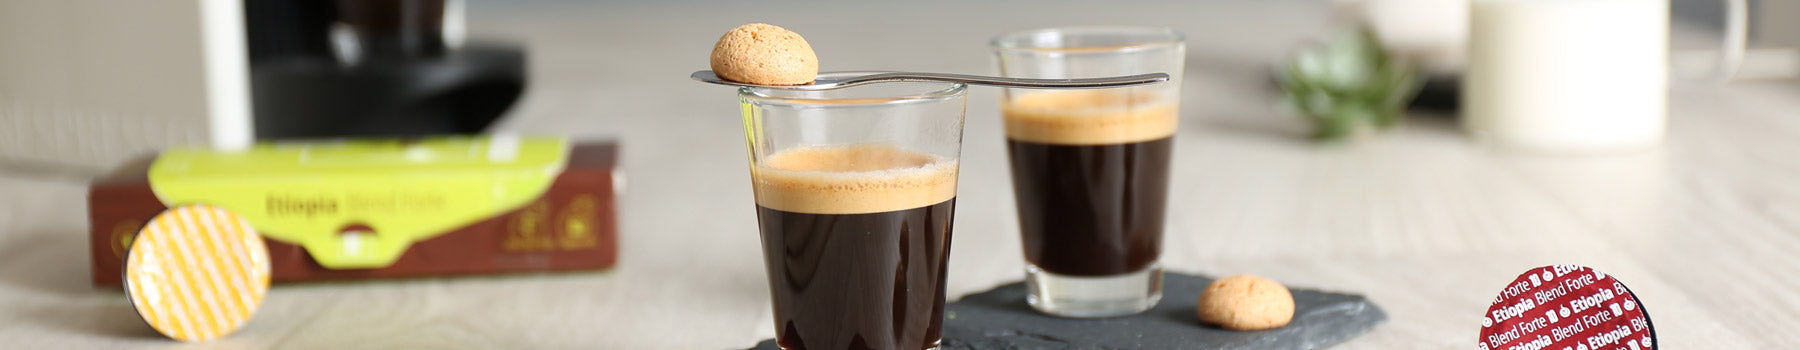 Your Nespresso Coffee Equivalent - Gourmesso Coffee